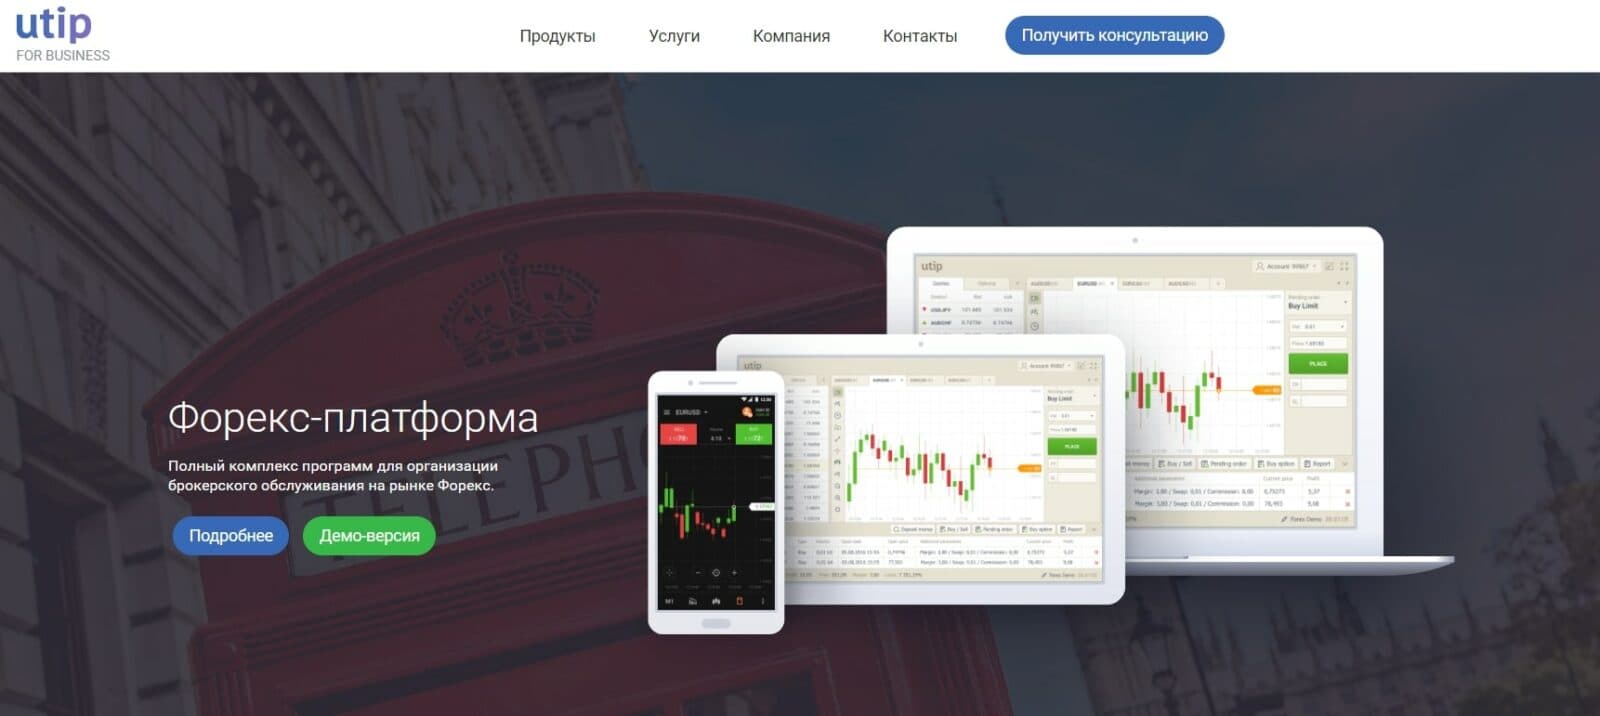 Форекс платформа UTIP Trader